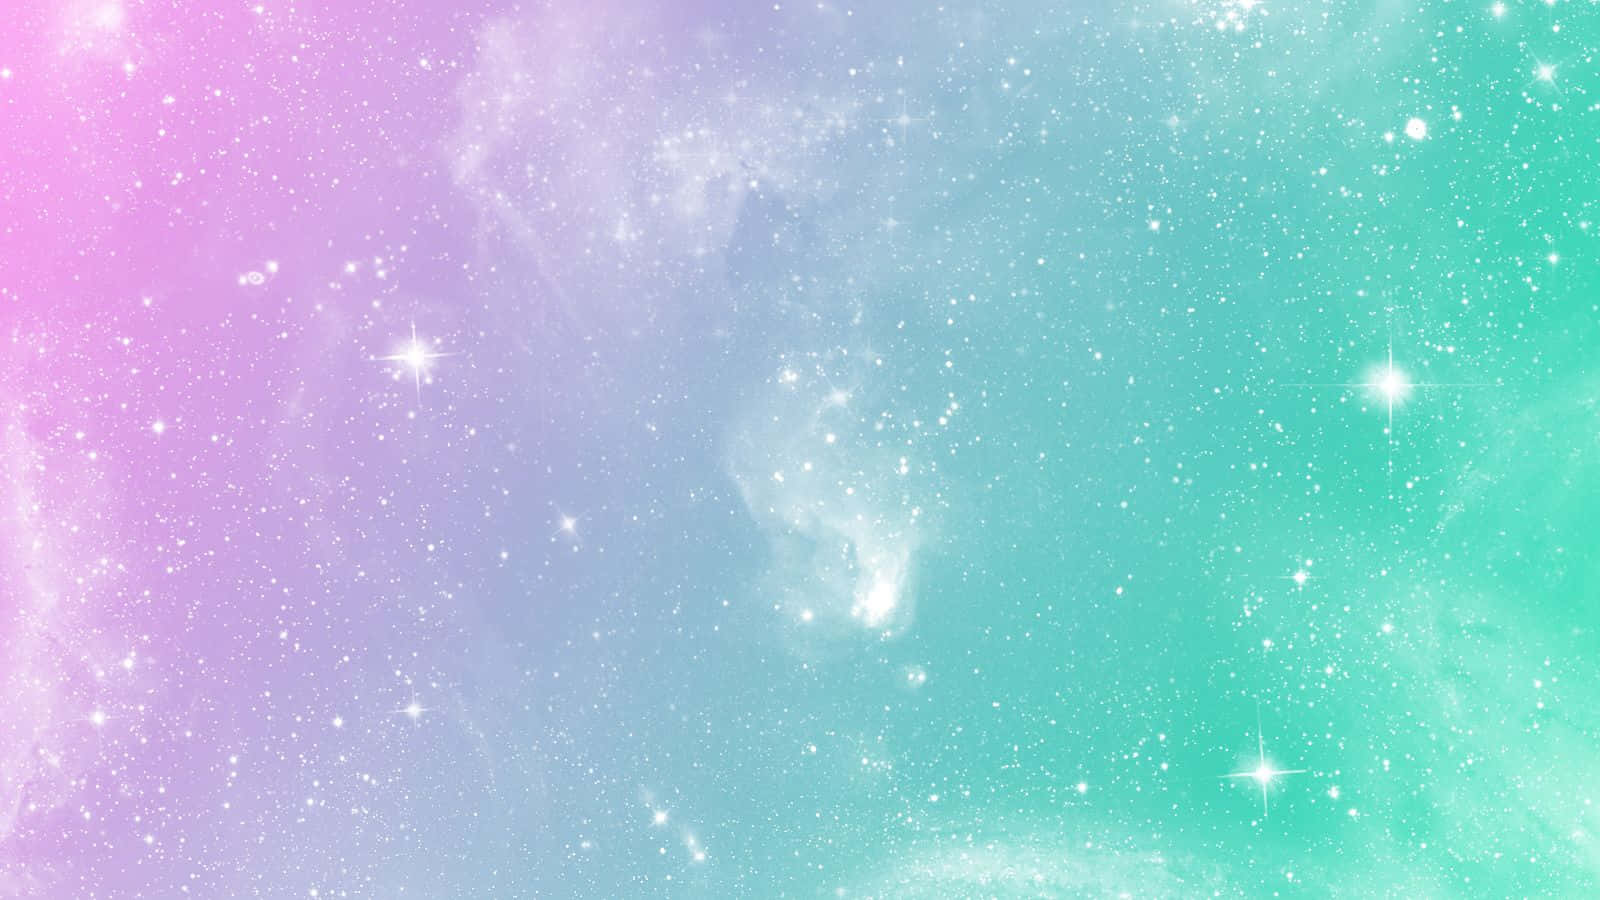 Einrosa Und Blaues Galaxie-hintergrundbild Mit Sternen Wallpaper